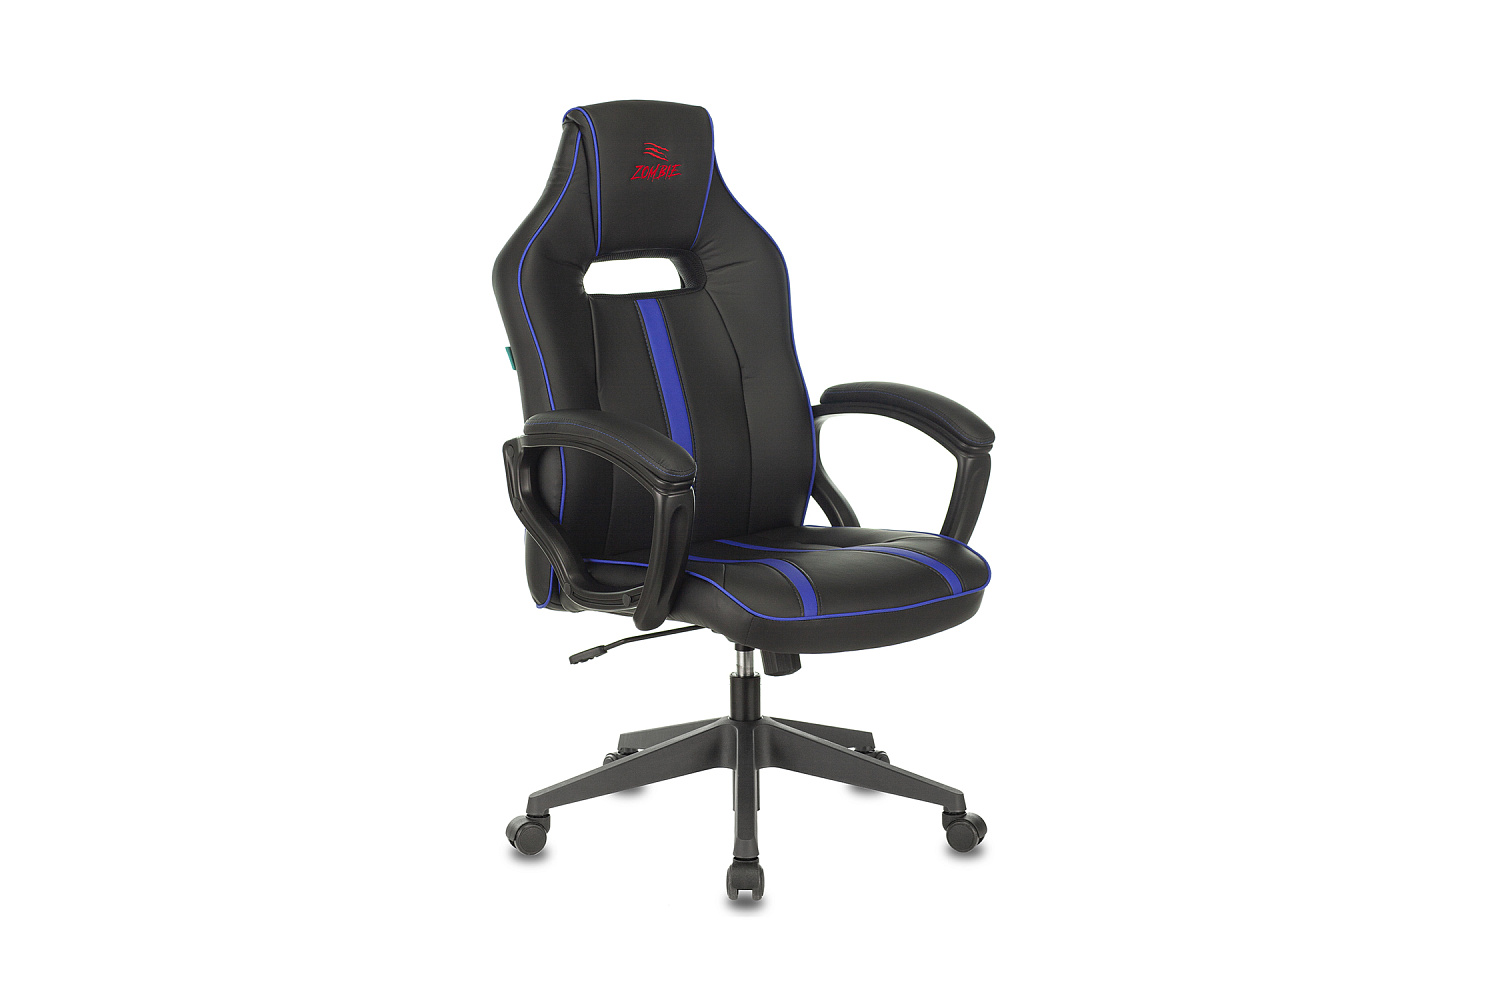 Новое геймерское кресло zombie 10